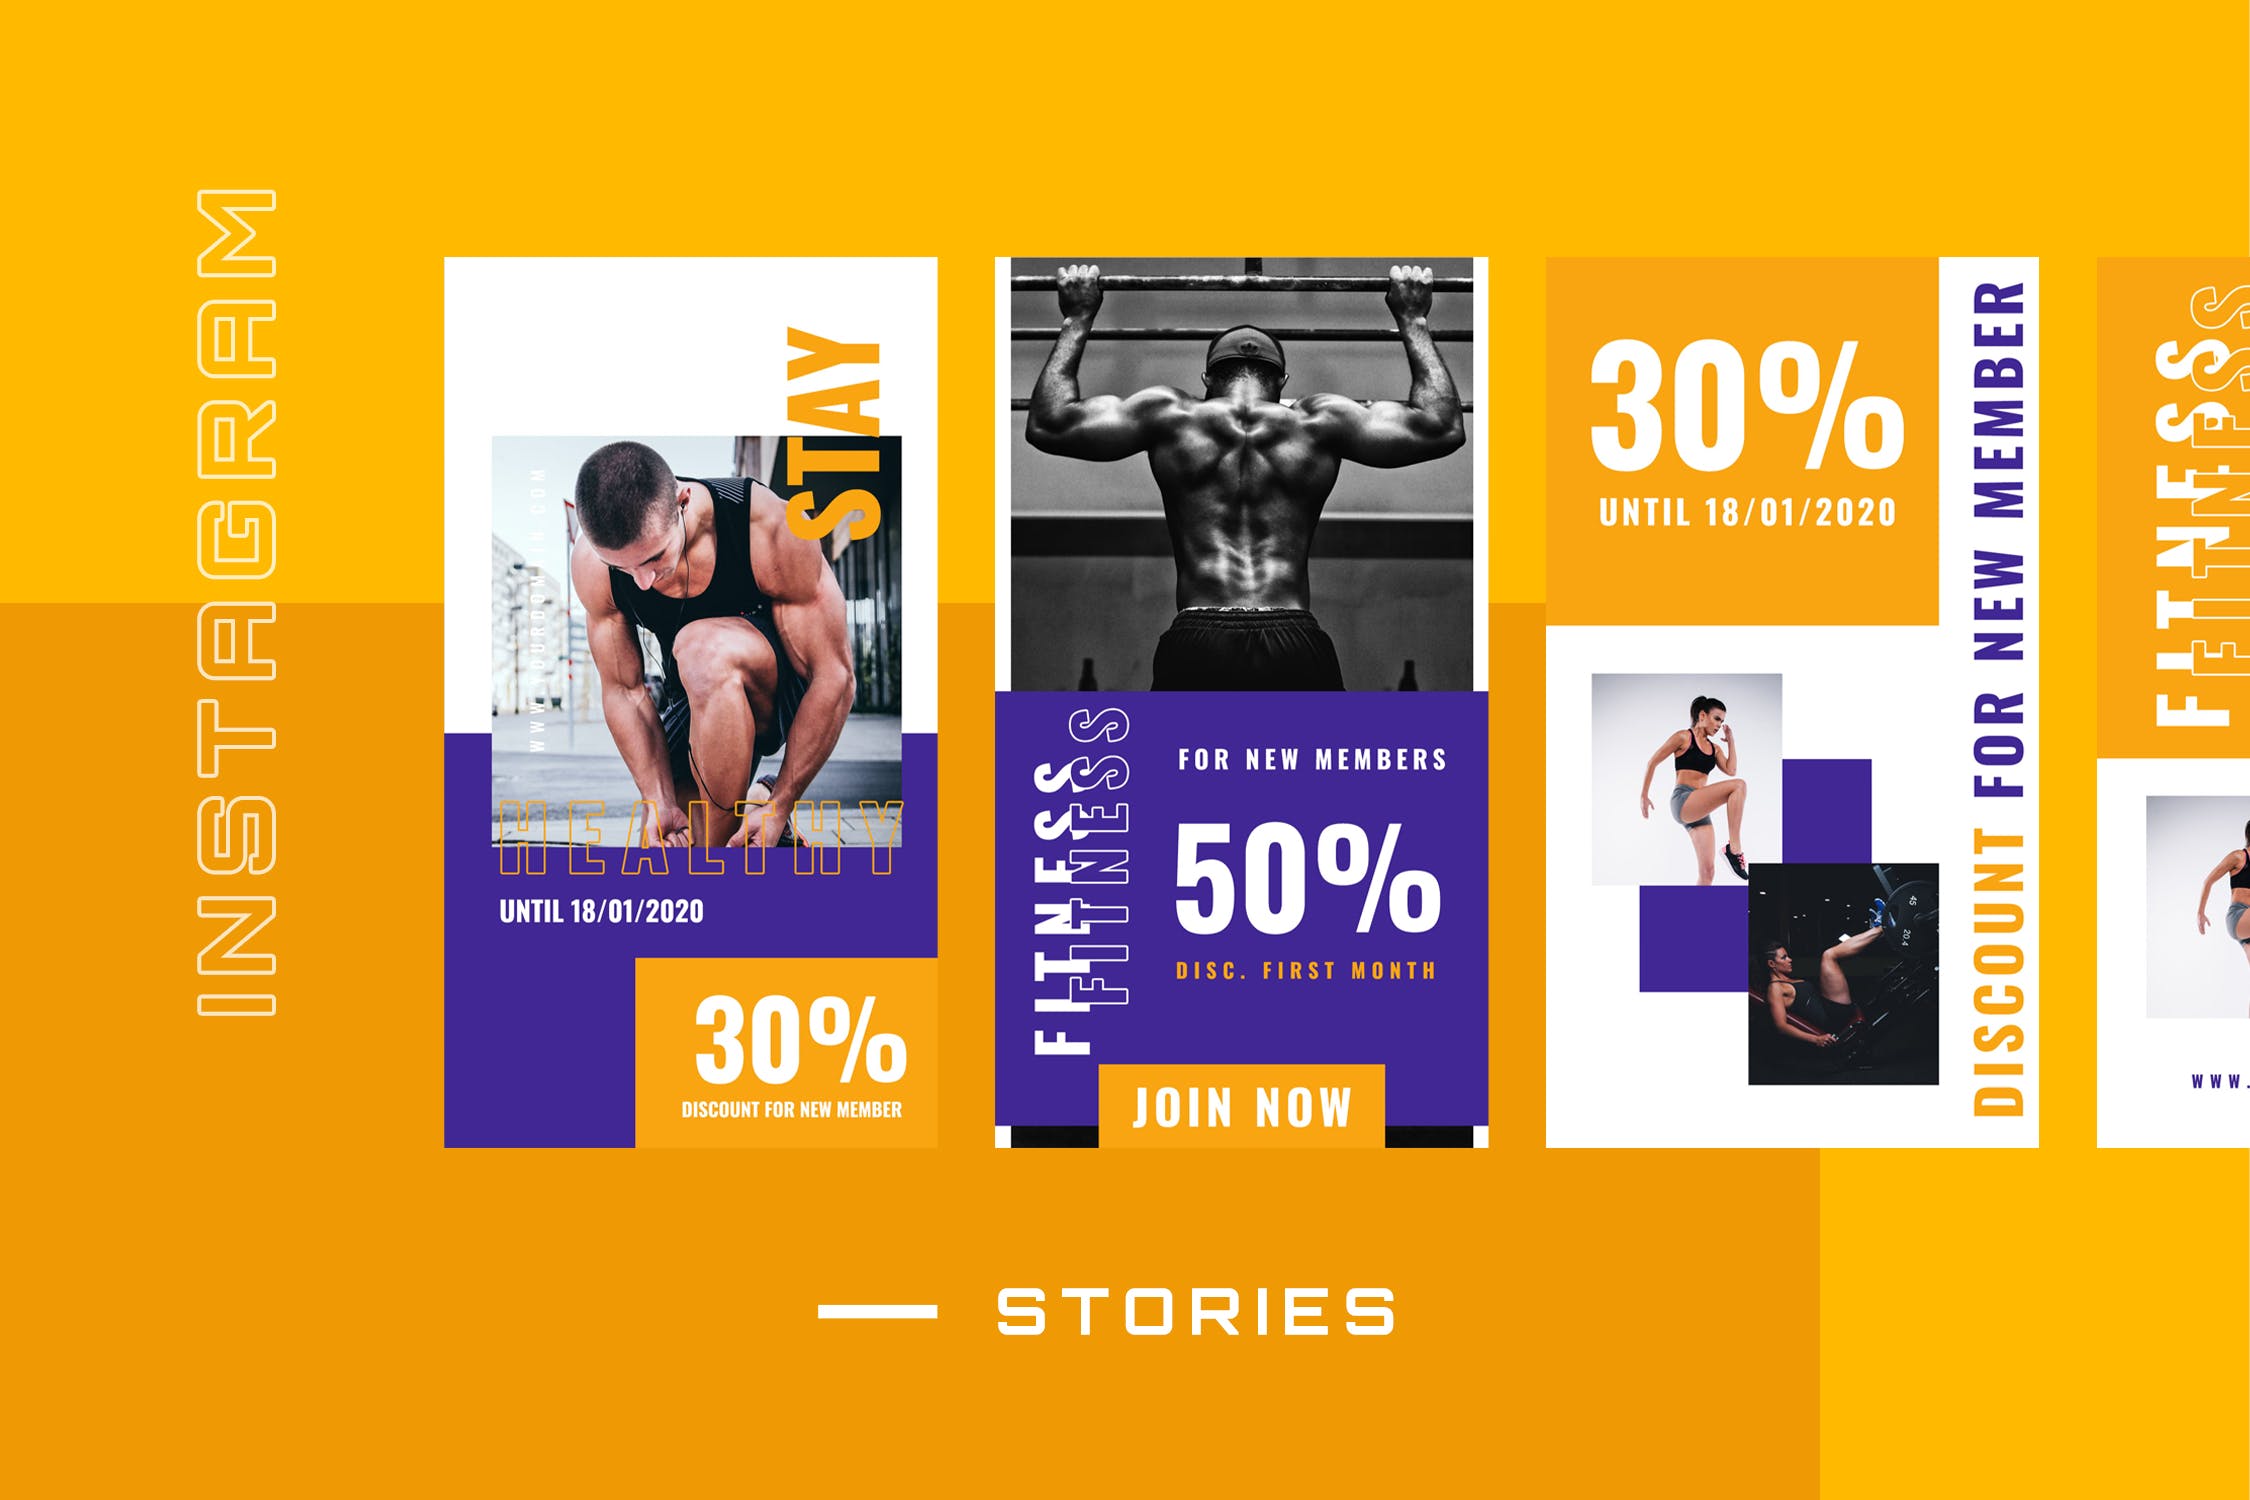 运动健身俱乐部促销主题Instagram故事定制社交媒体素材 Tweleve – Instagram Stories – Social Media K设计素材模板